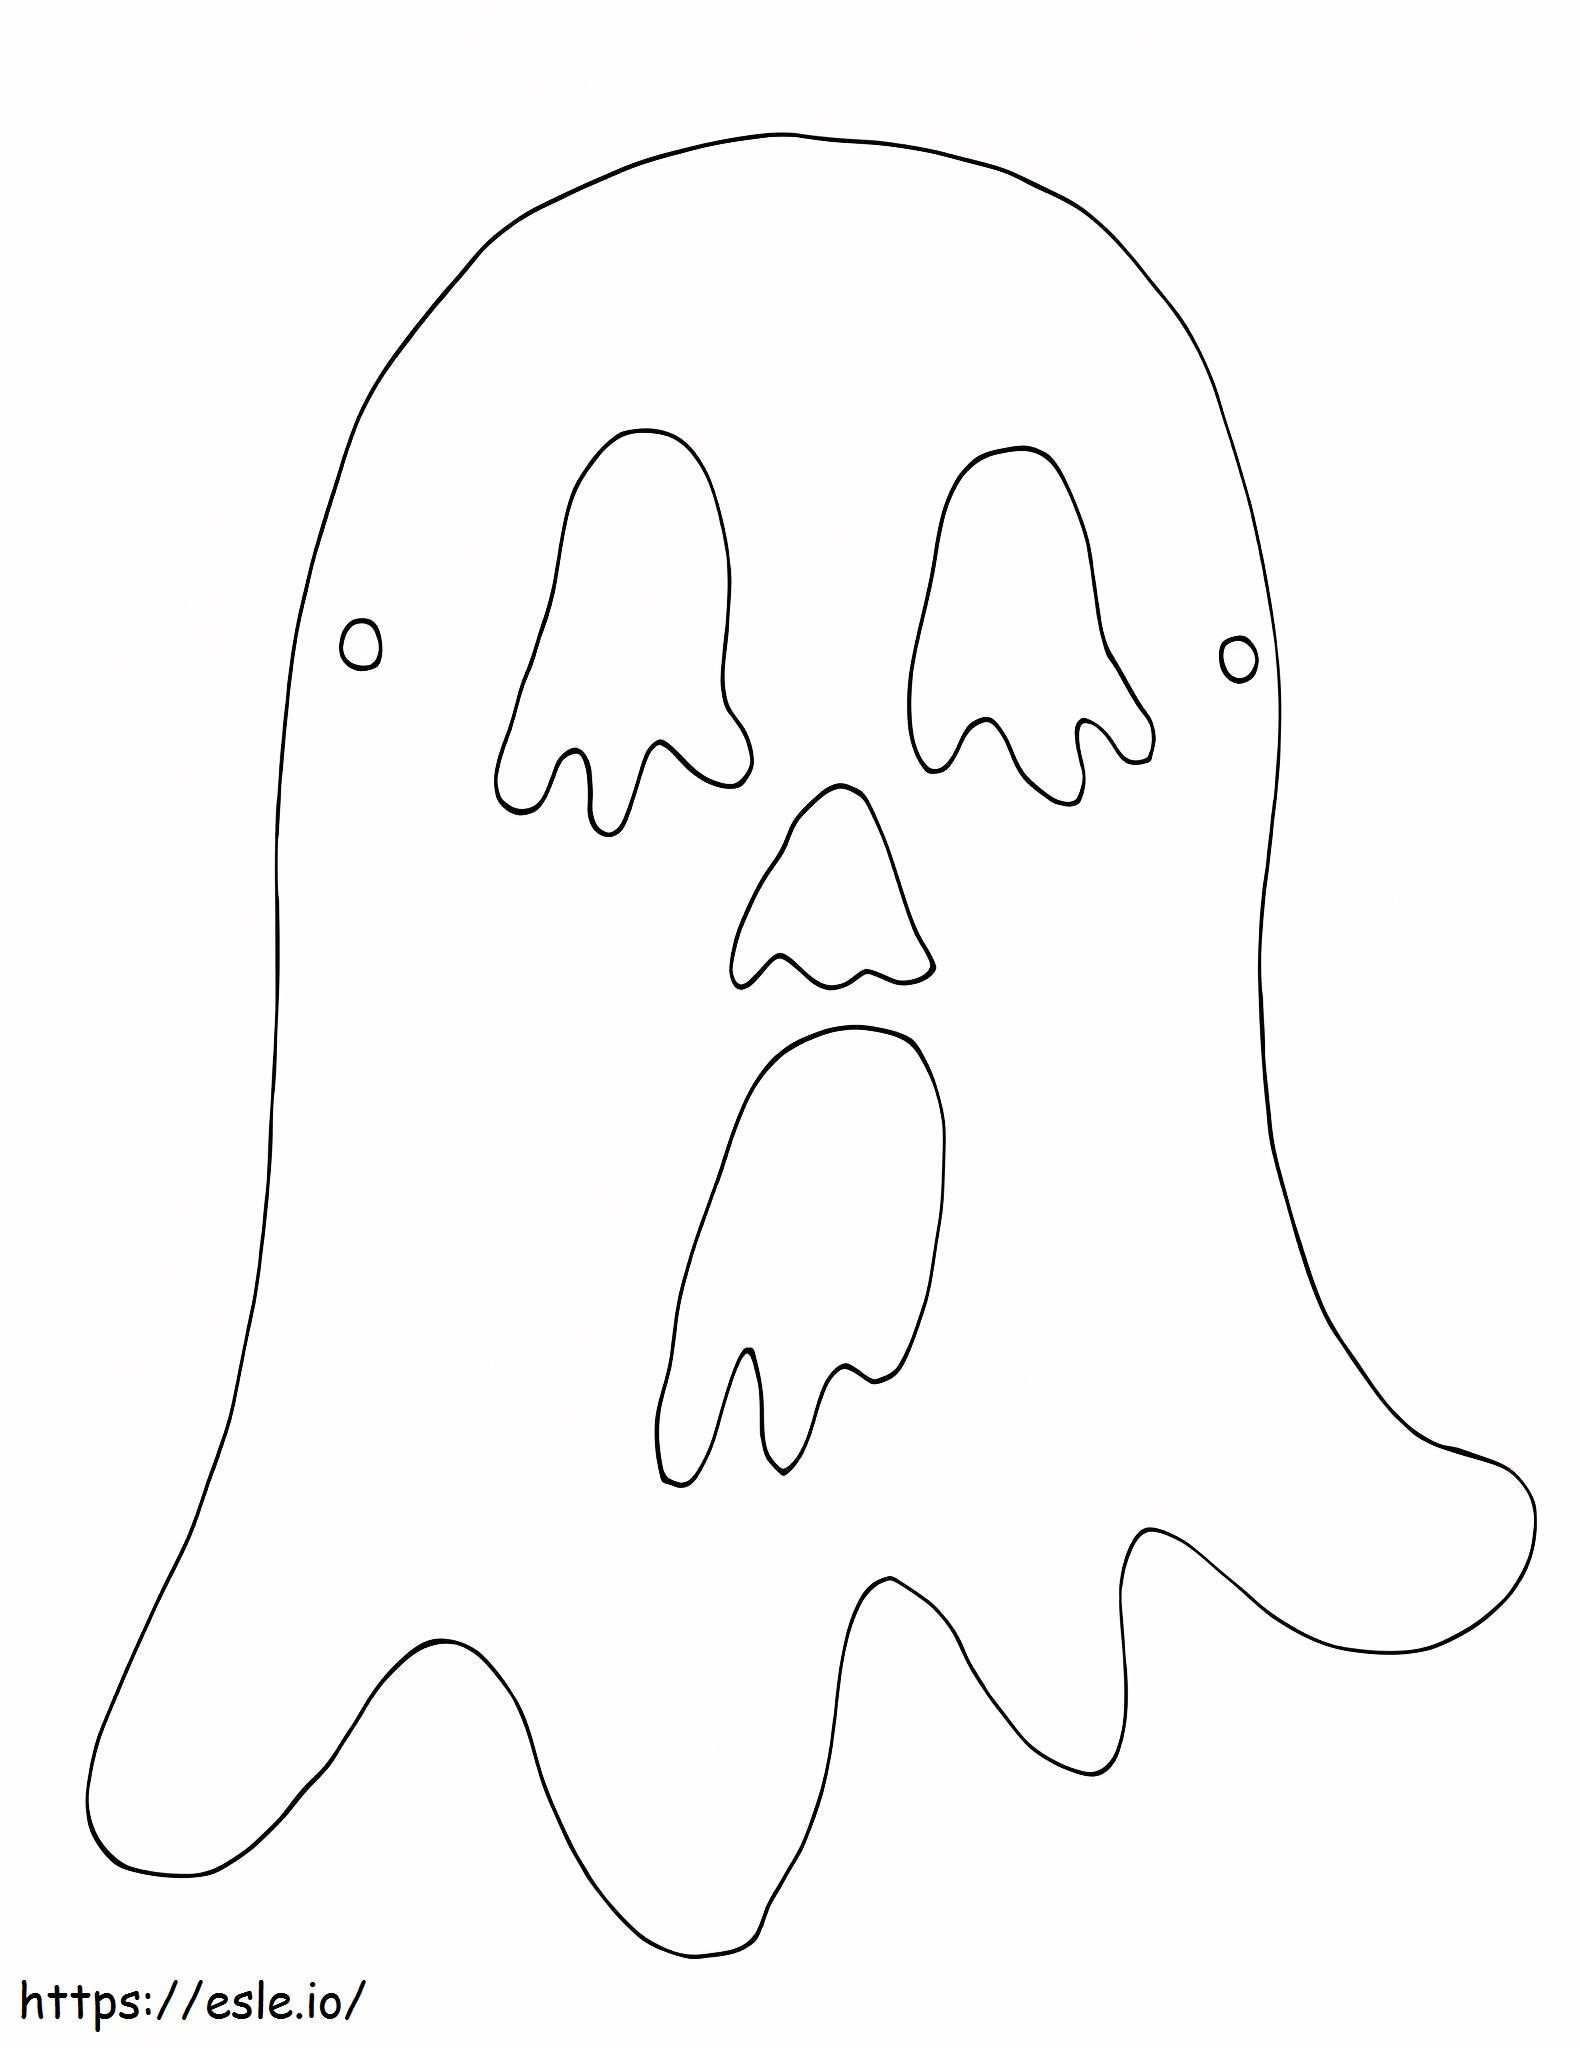 Máscara de miedo fantasma para colorear